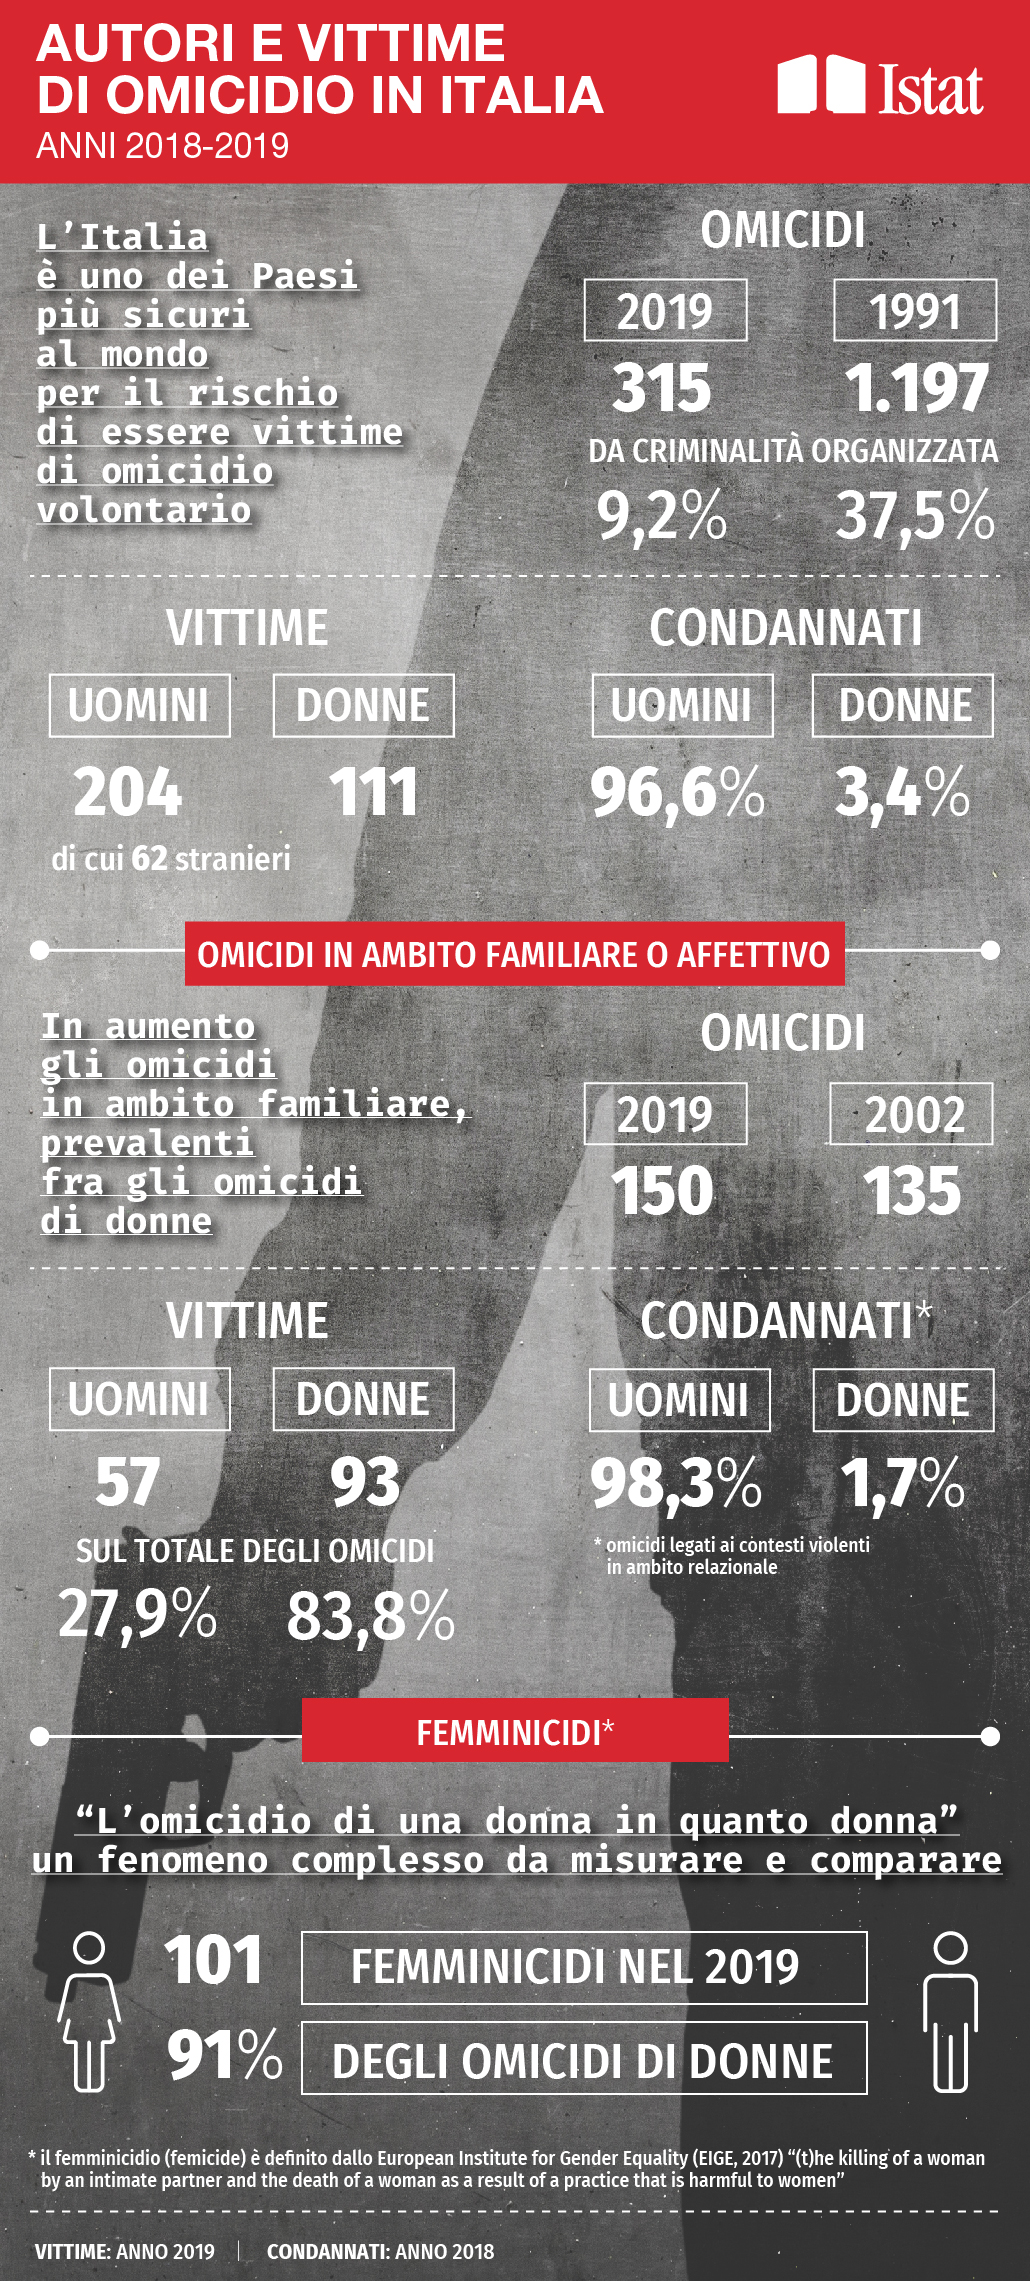 Autori e vittime di omicidio in Italia